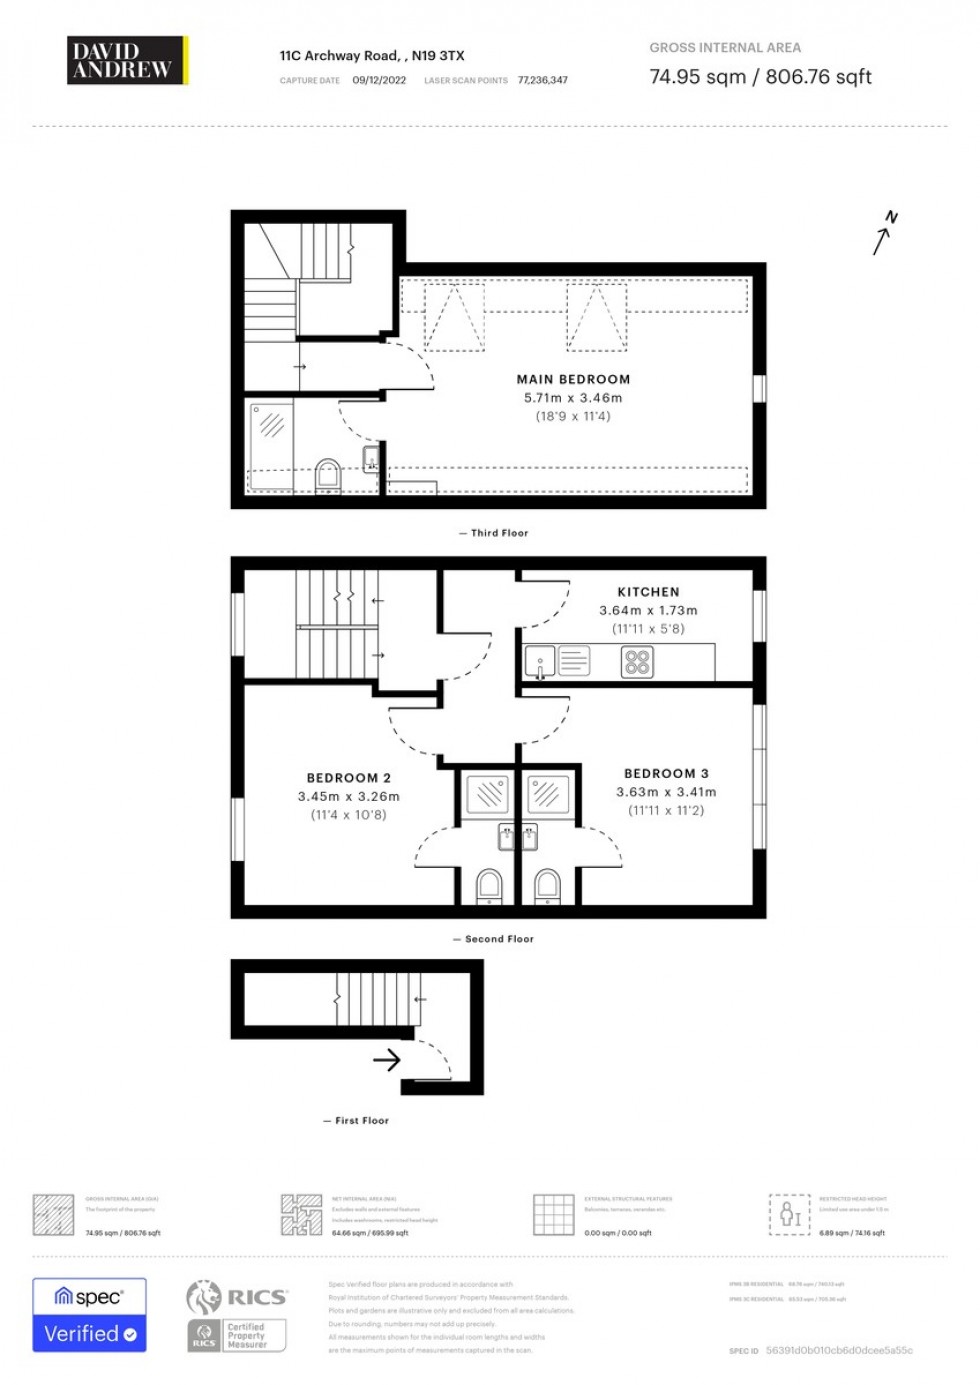 Floorplan for Archway Road, Highgate Hill, N19 3TX